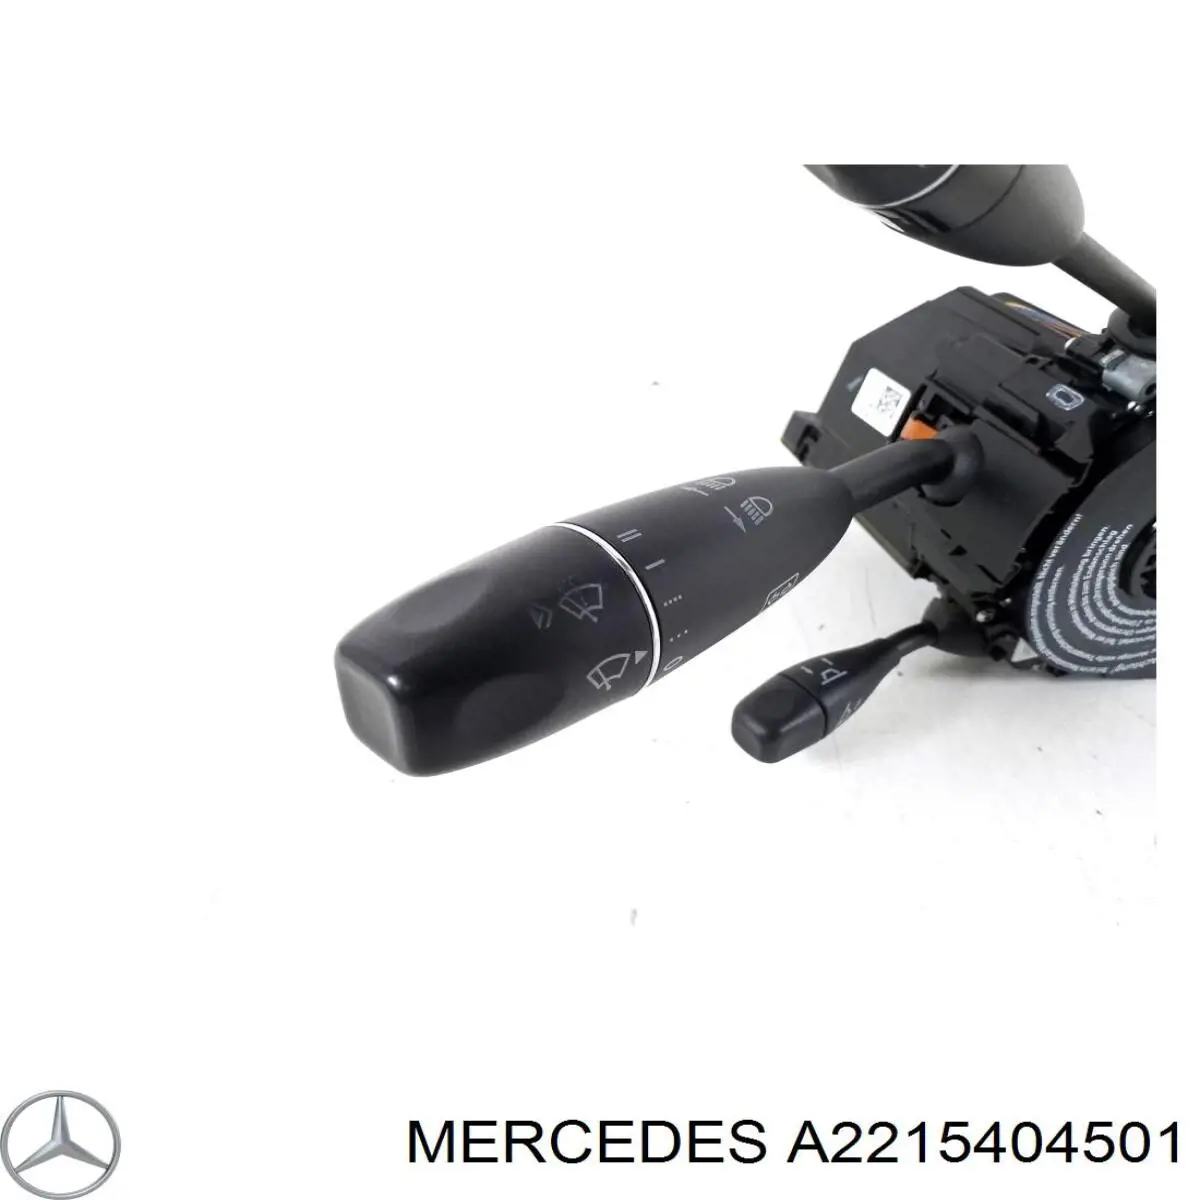 A2215404501 Mercedes conmutador en la columna de dirección completo